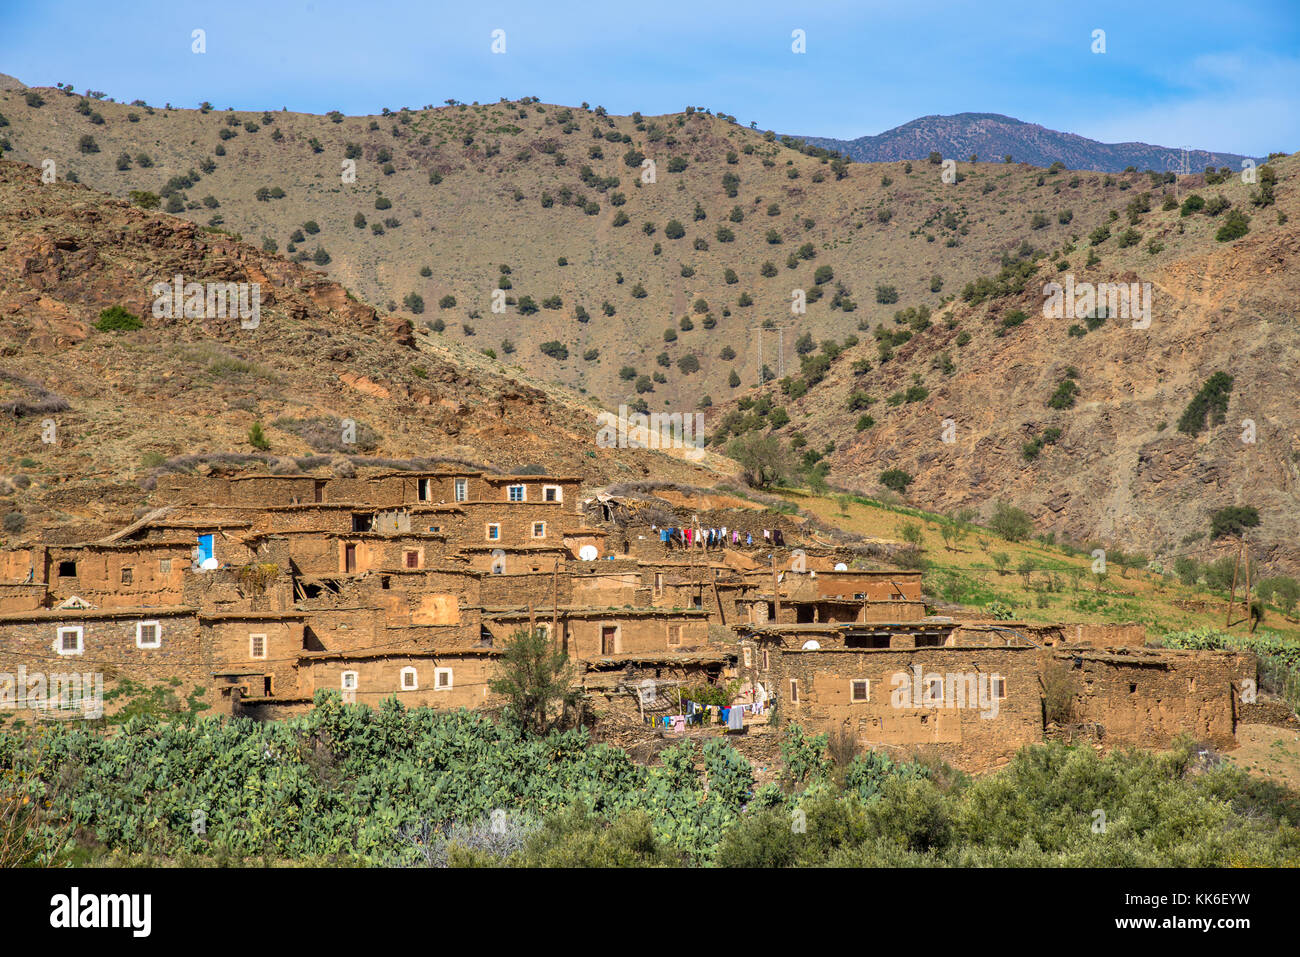 Village de la vallée d'imlill tiz n test pass, Maroc Banque D'Images